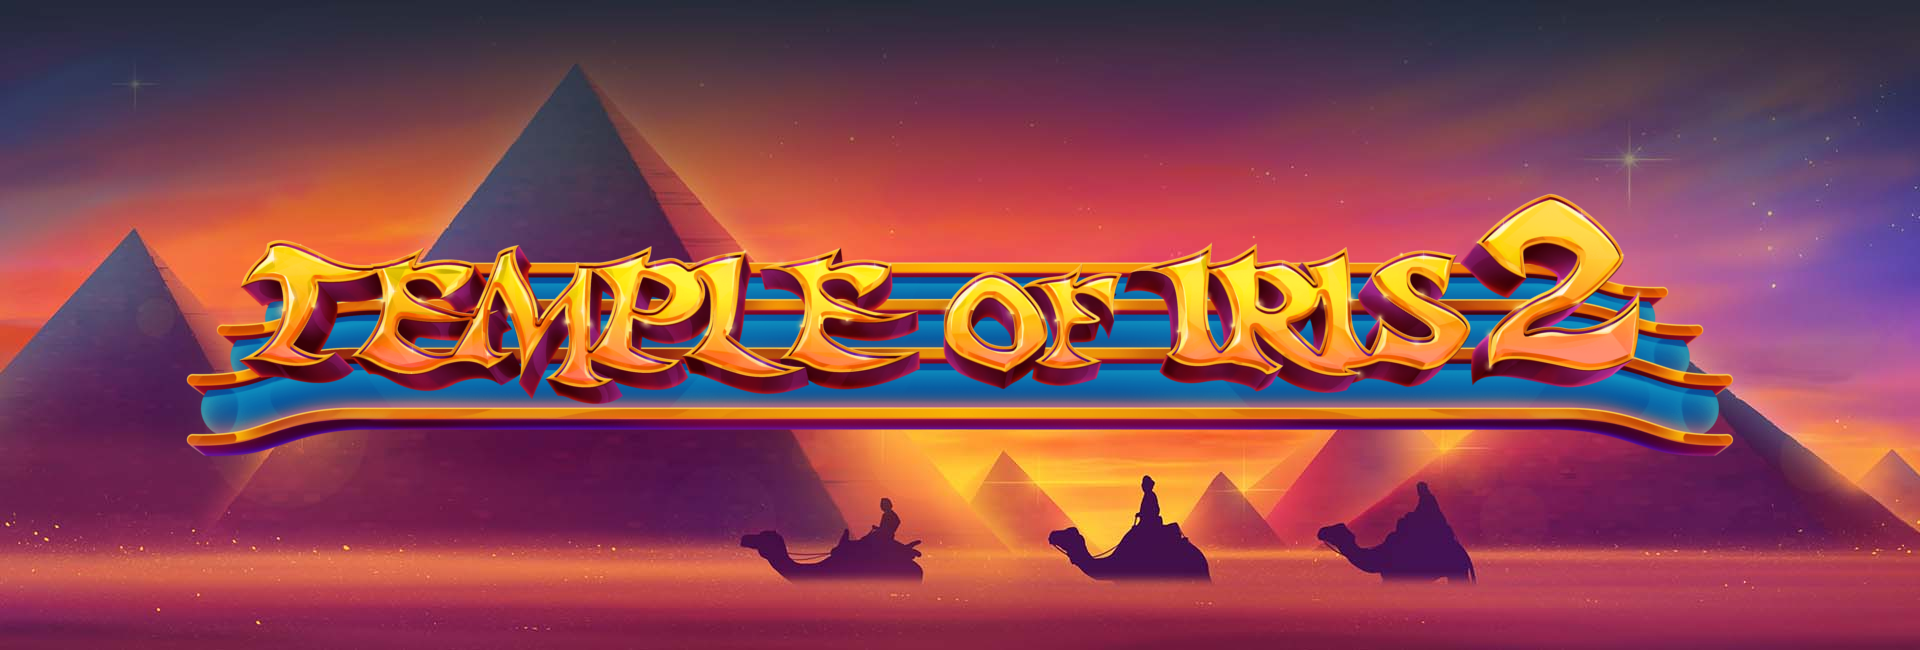 Temple of Iris 2 Slot Review - PMBC